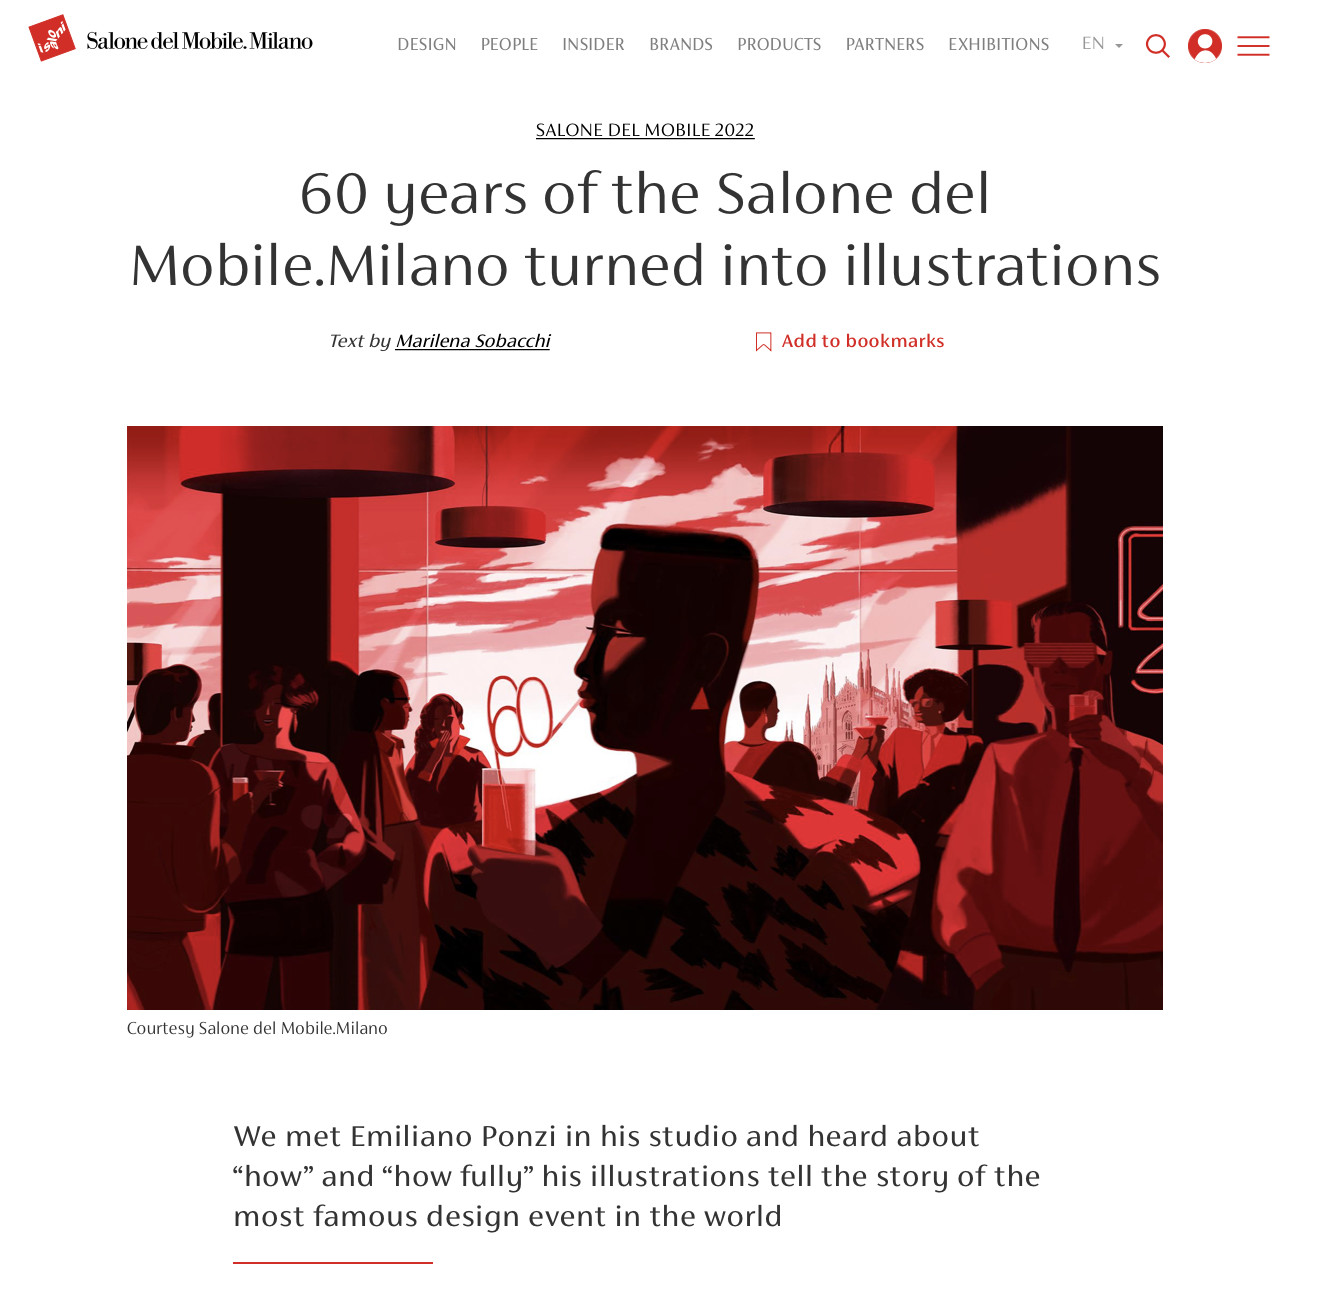 Salone del Mobile.Milano collaborates with illustrator Emiliano